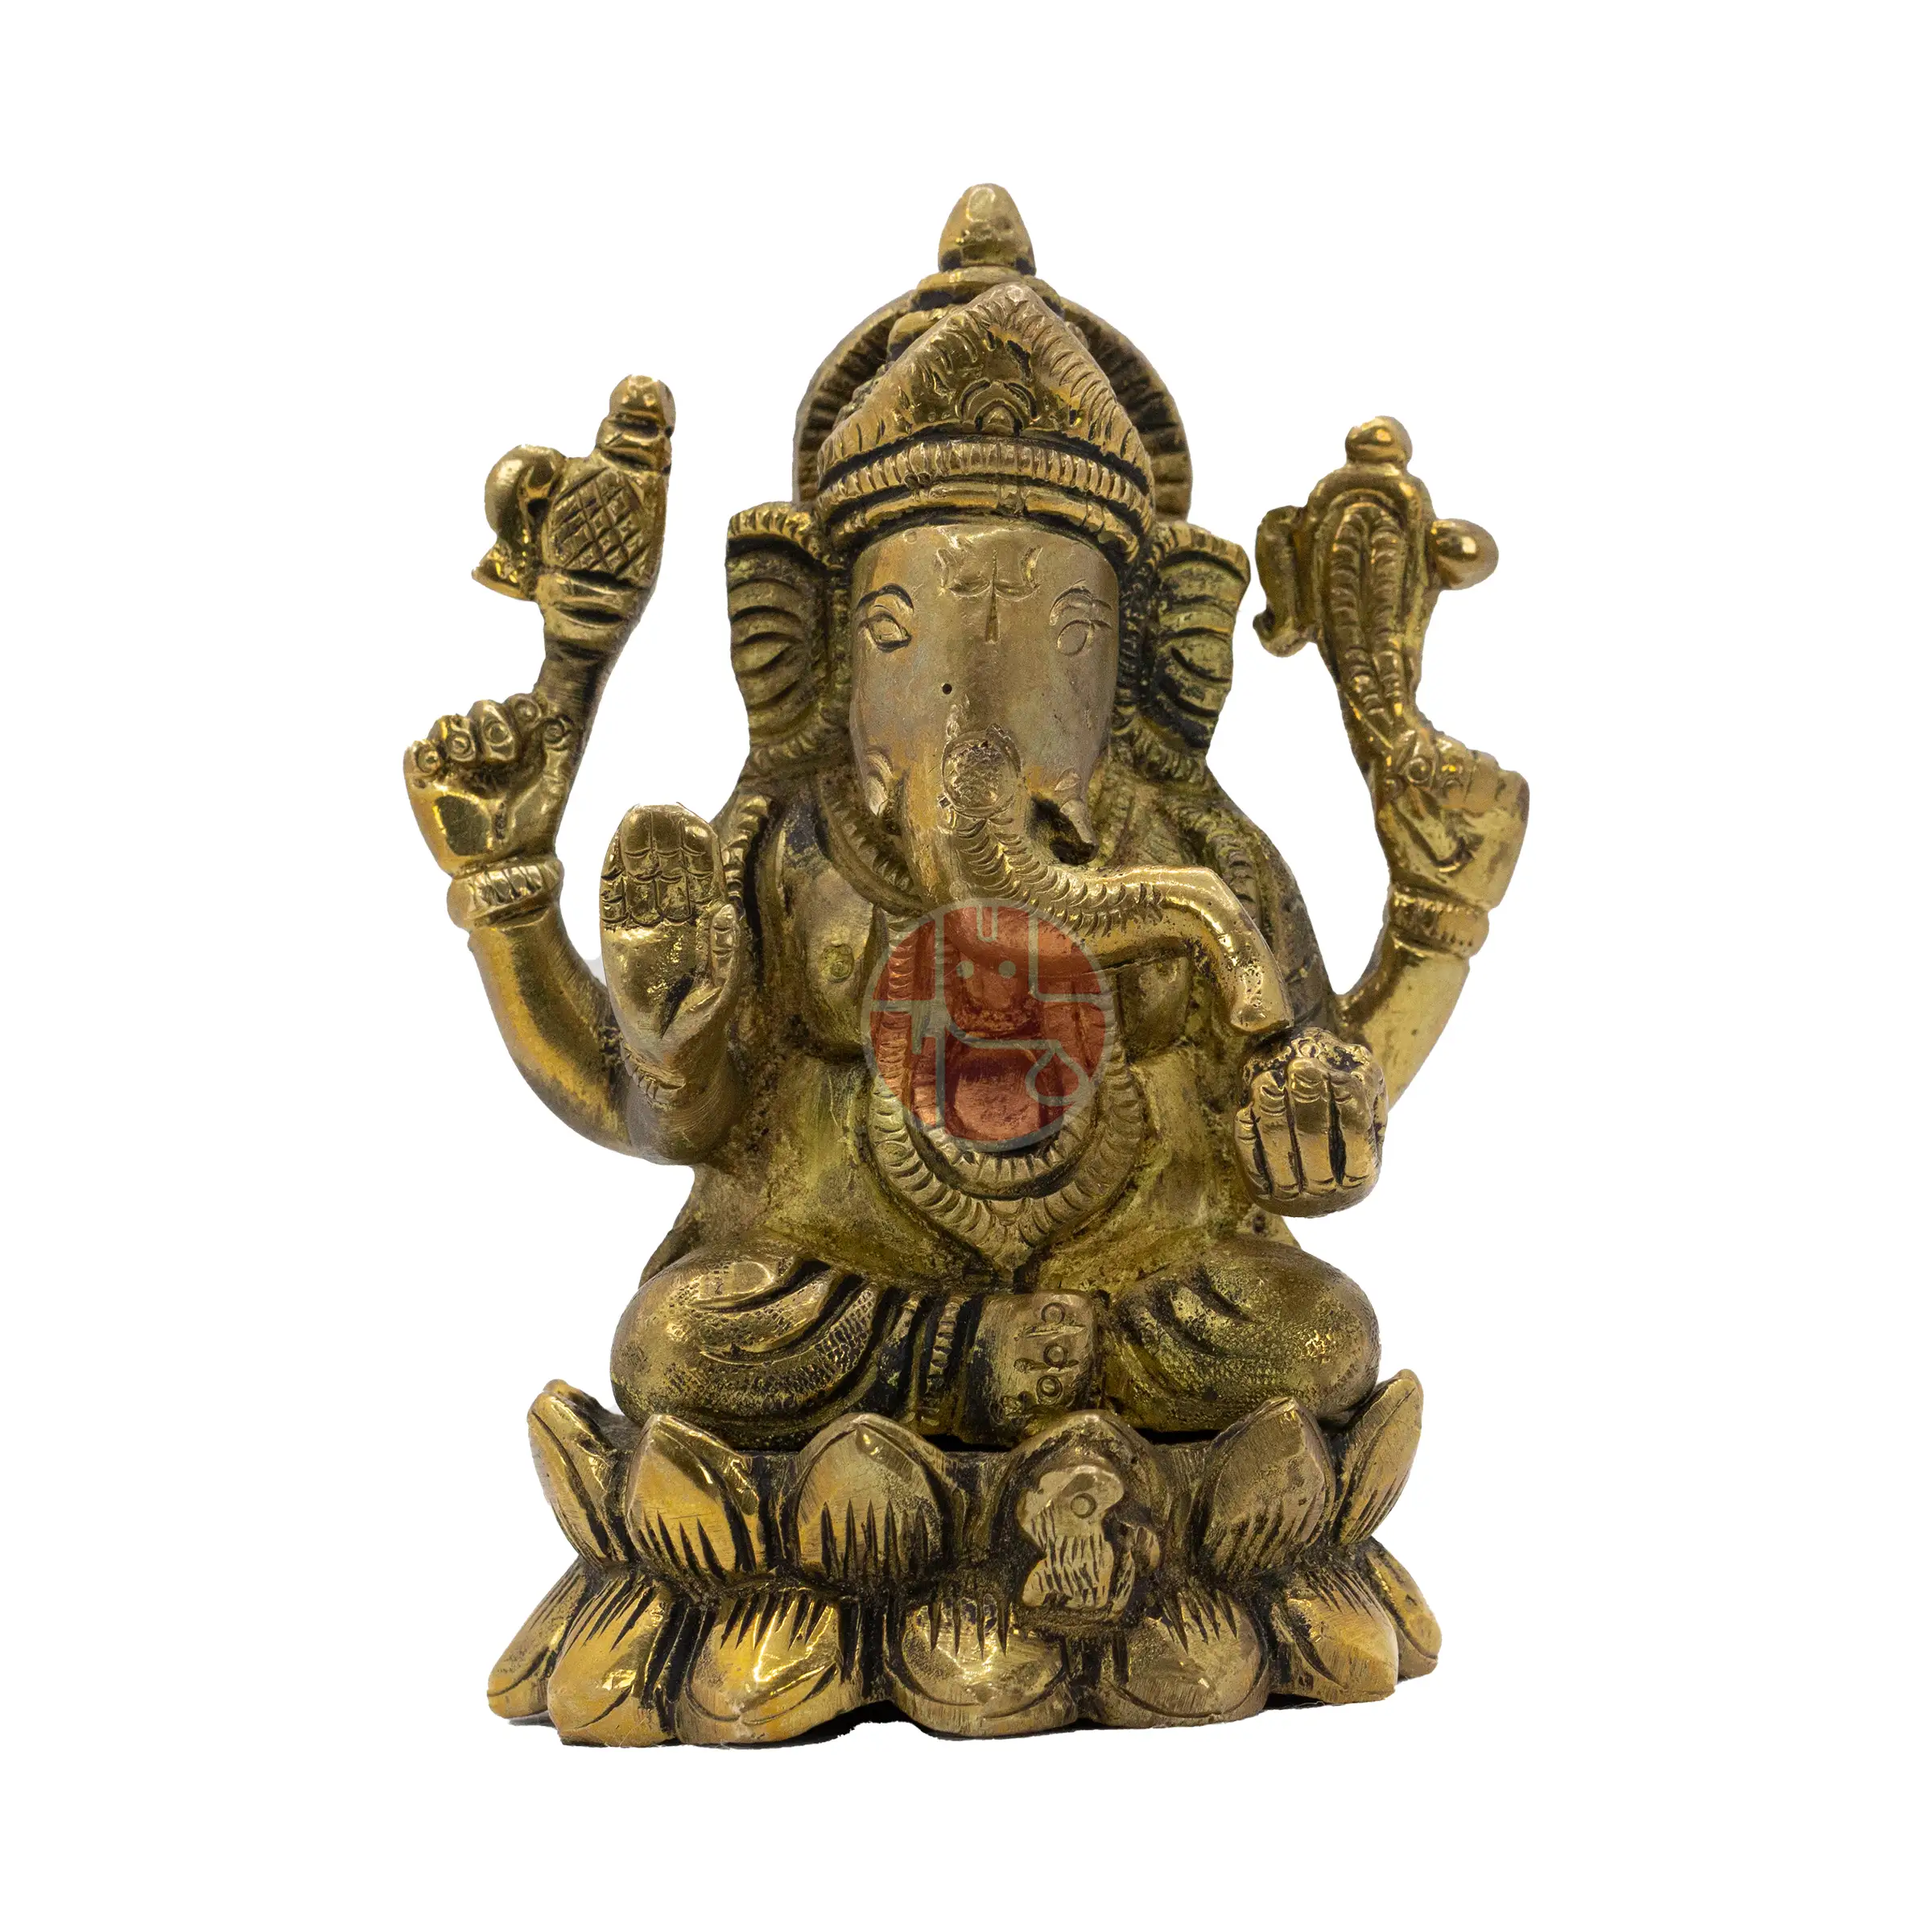 Holy Ganesha Idol – Attuned by Shri Bejan Daruwalla